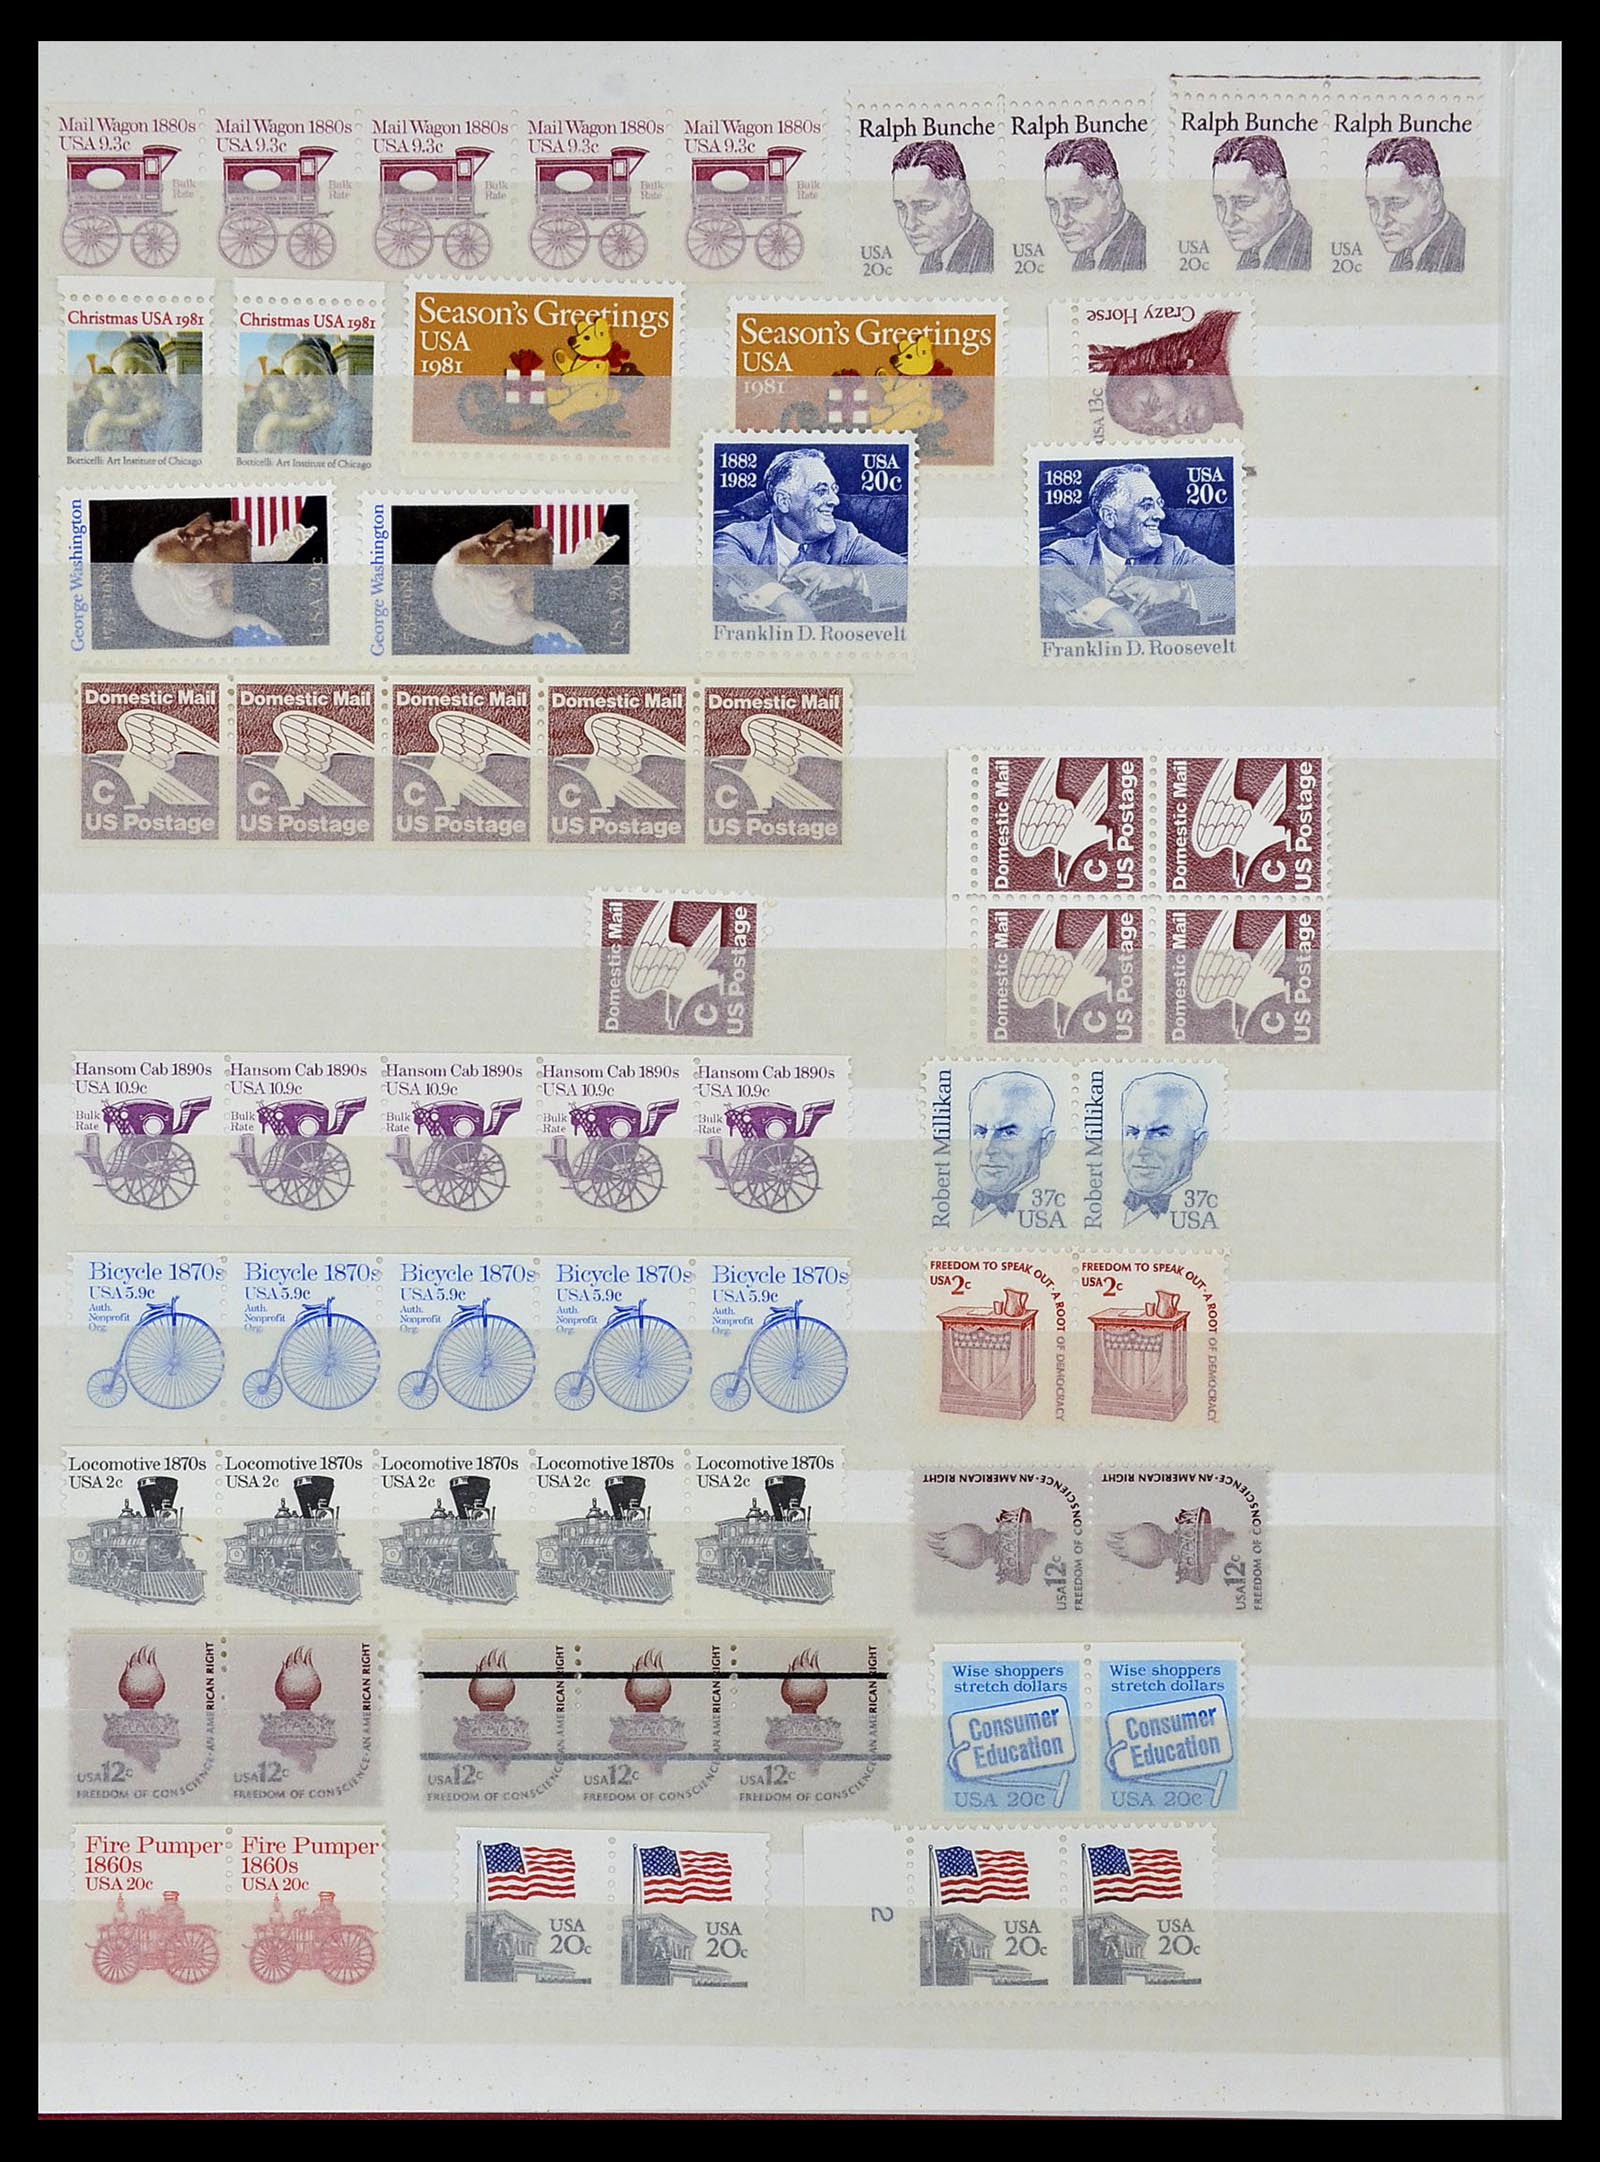 34237 056 - Stamp collection 34237 USA MNH 1935-1998.